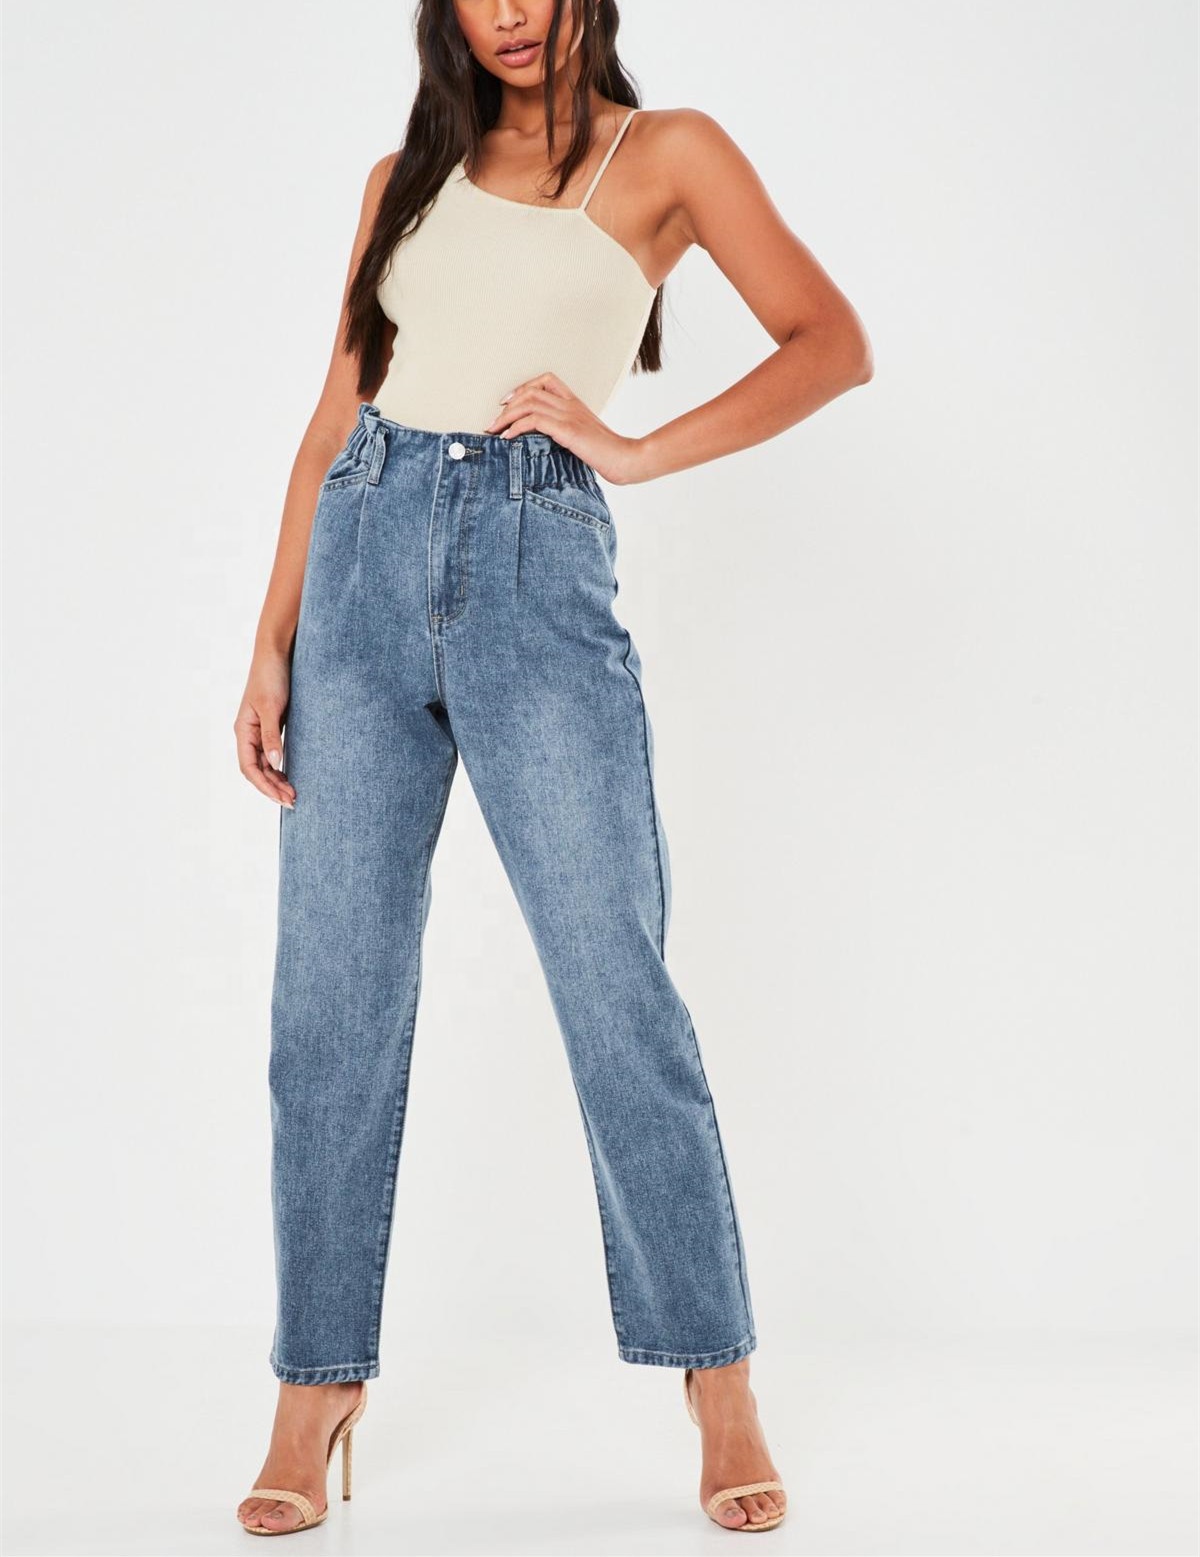 2020 wholesale cotton light blue elastic waist denim jeans for women